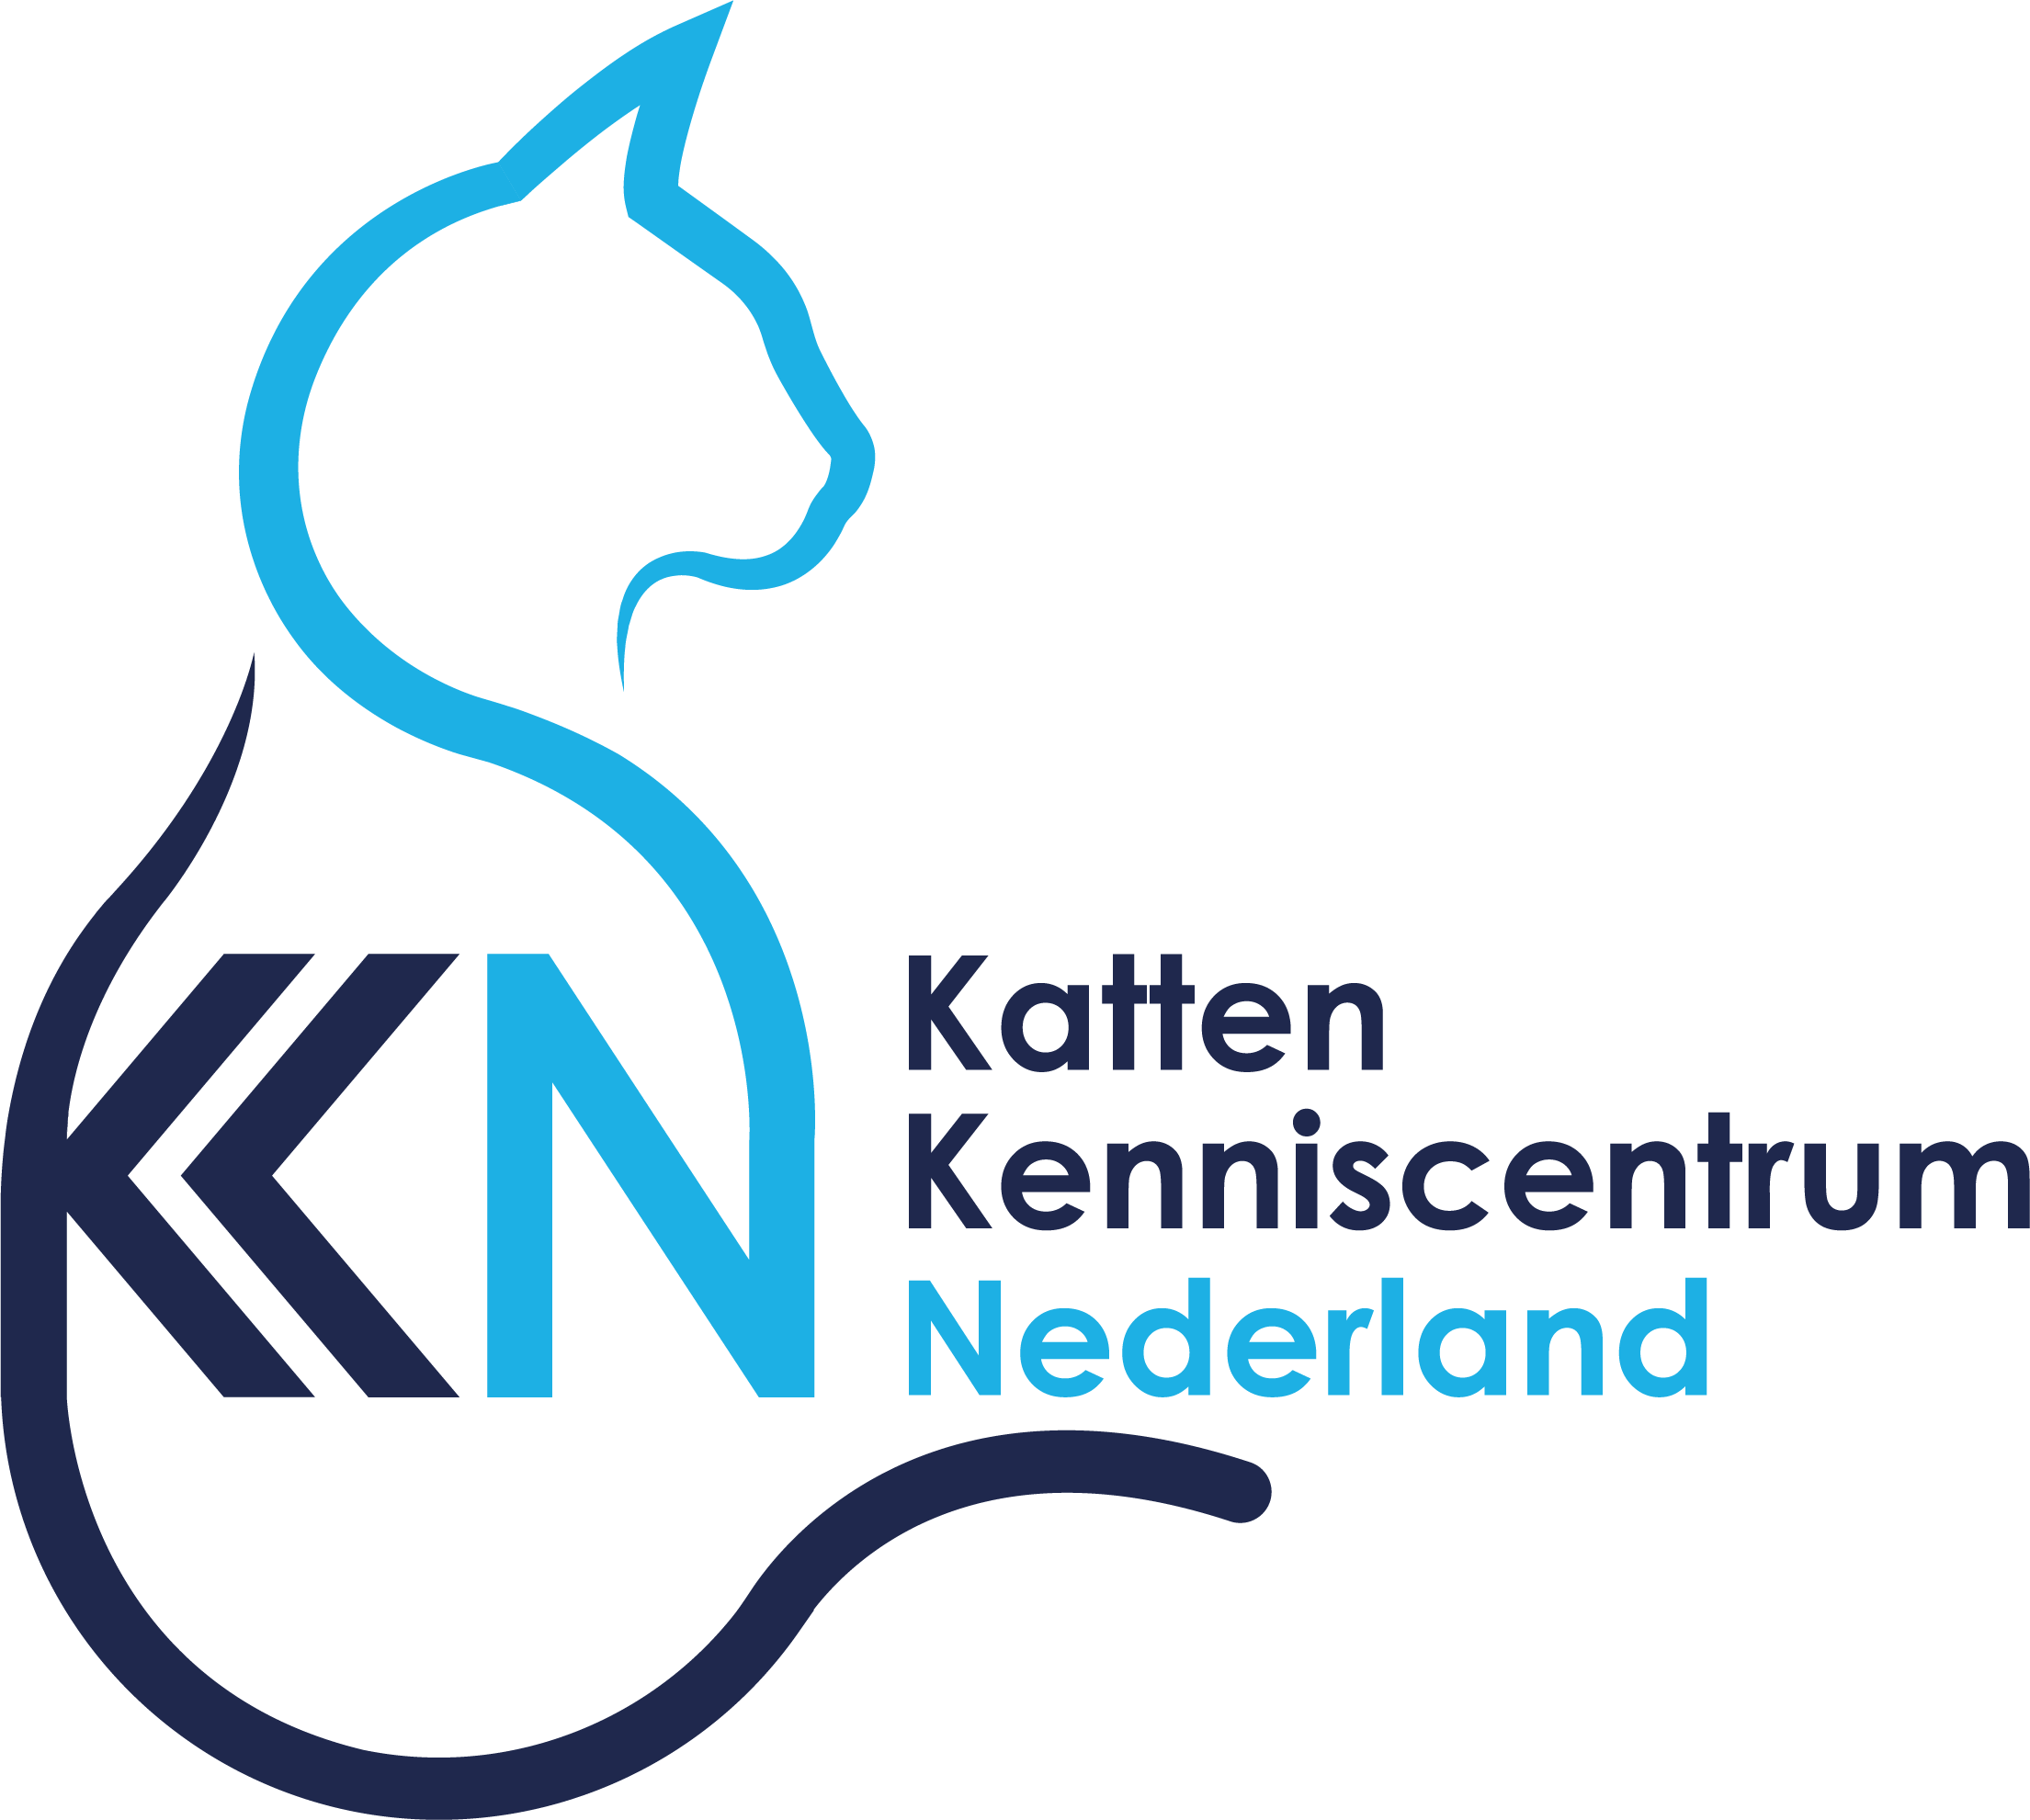 Katten Kenniscentrum Nederland